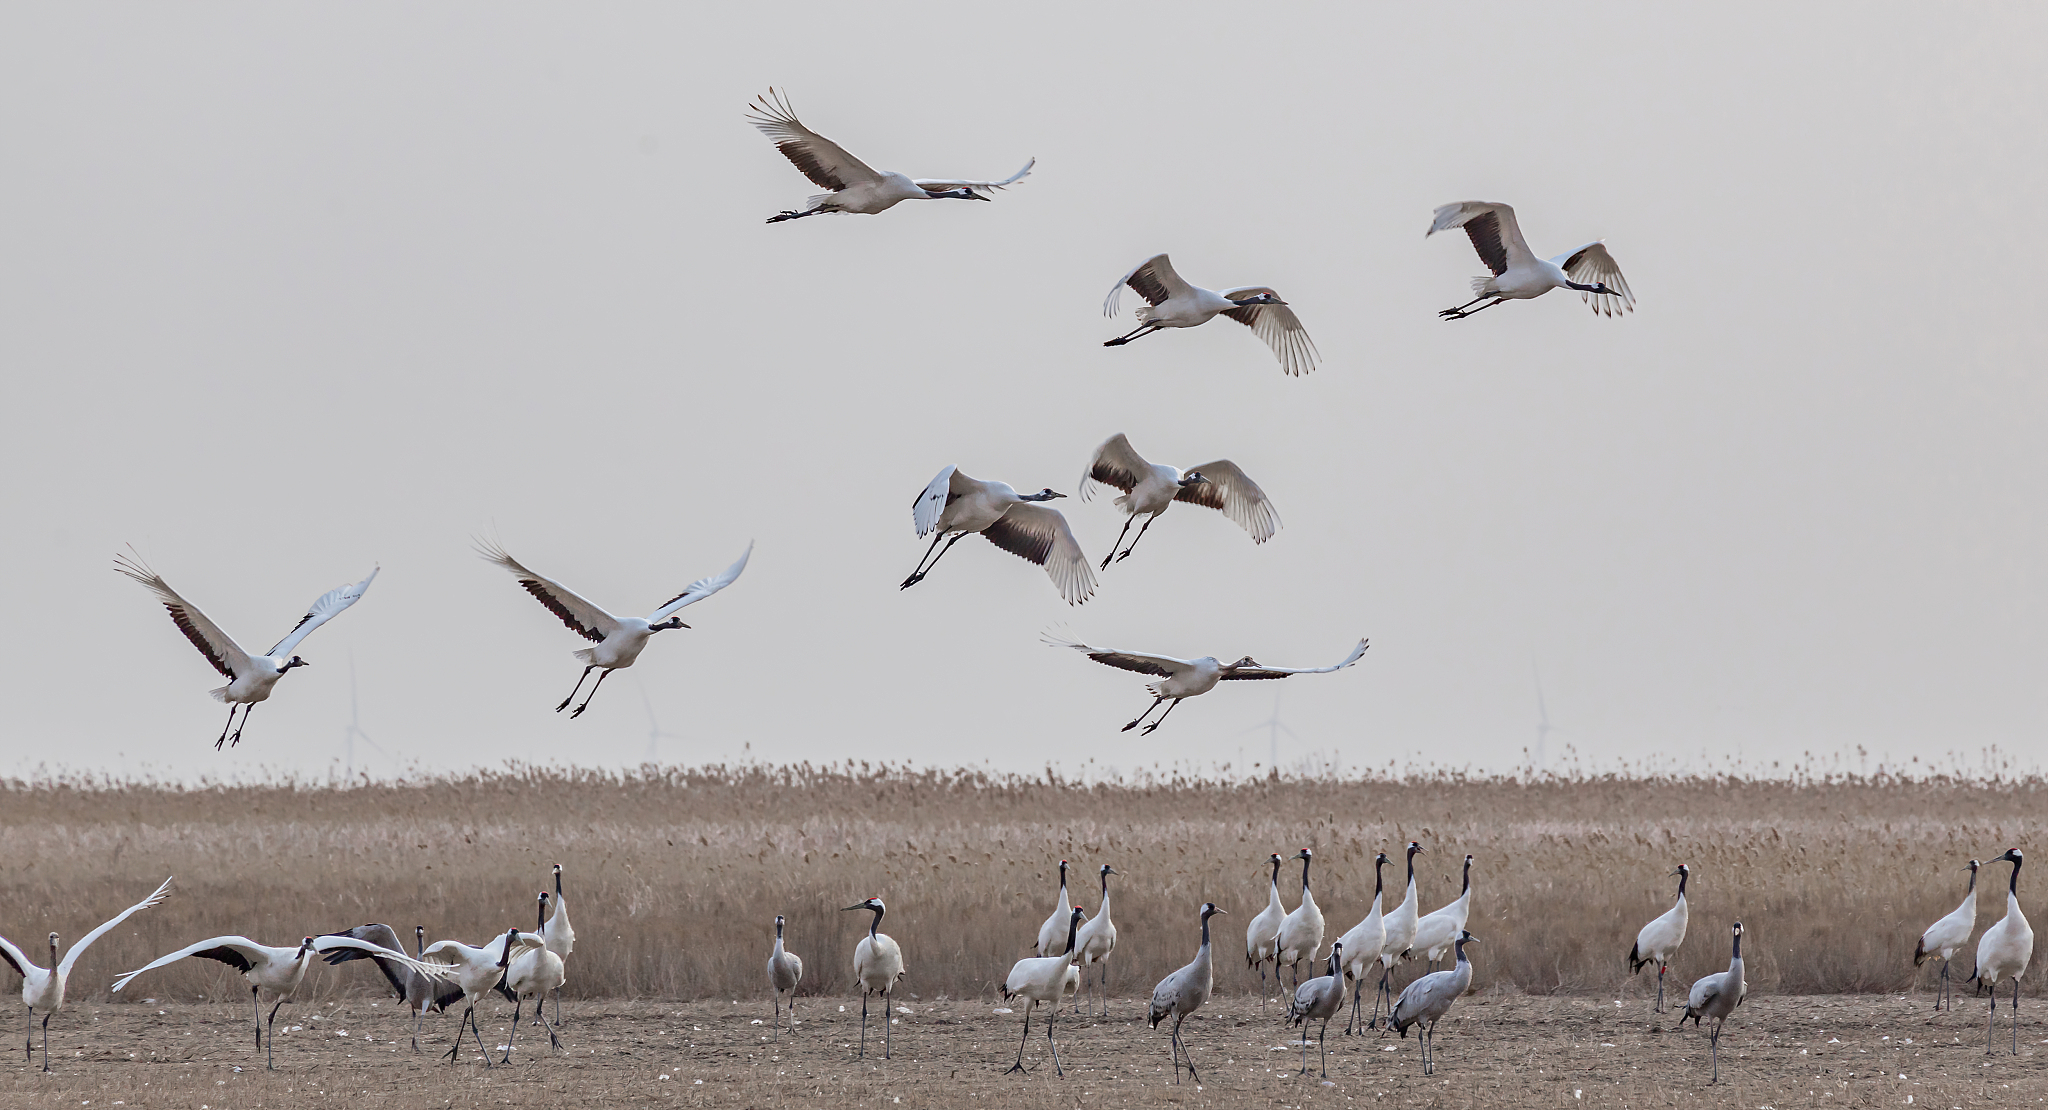 盐城丹顶鹤自然保护区位于江苏省盐城市大丰区境内,是世界上最大的